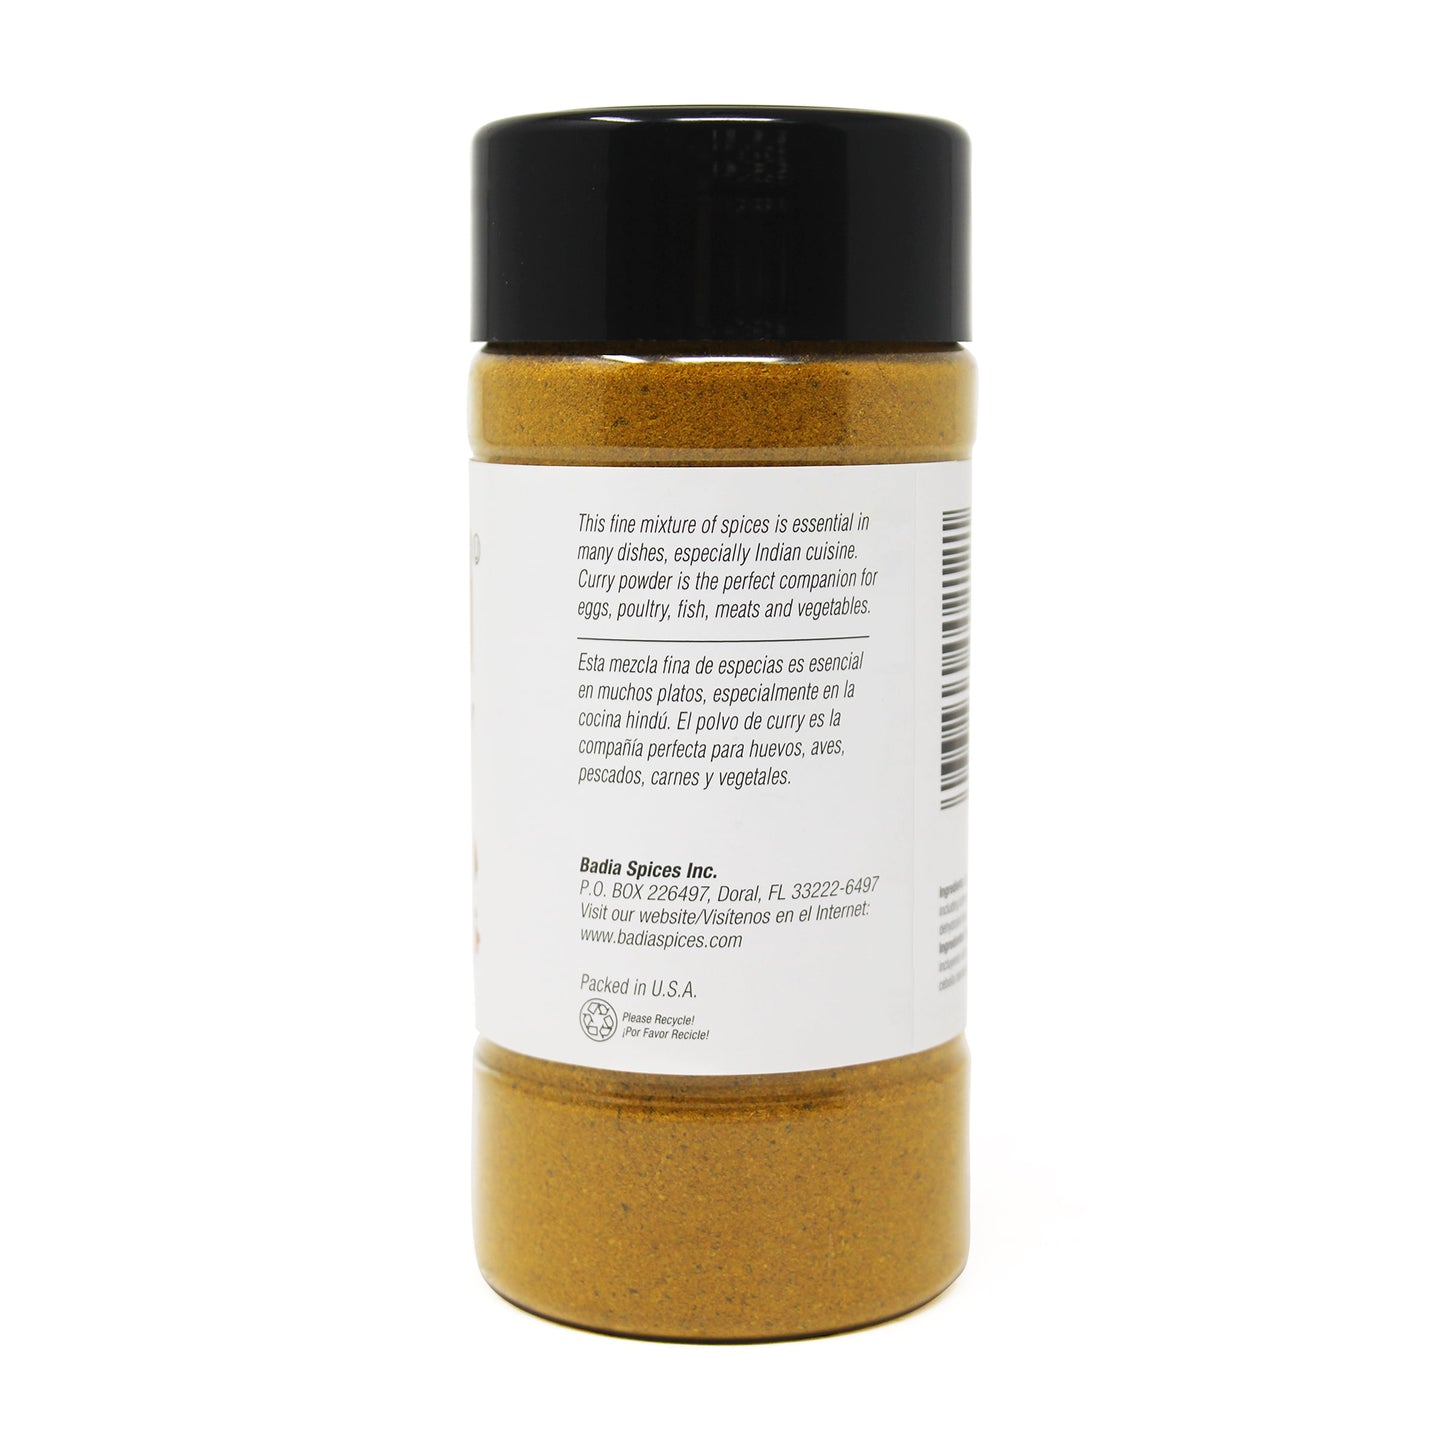 Badia Curry Powder, Spices & Seasoning, 7 oz Bottle